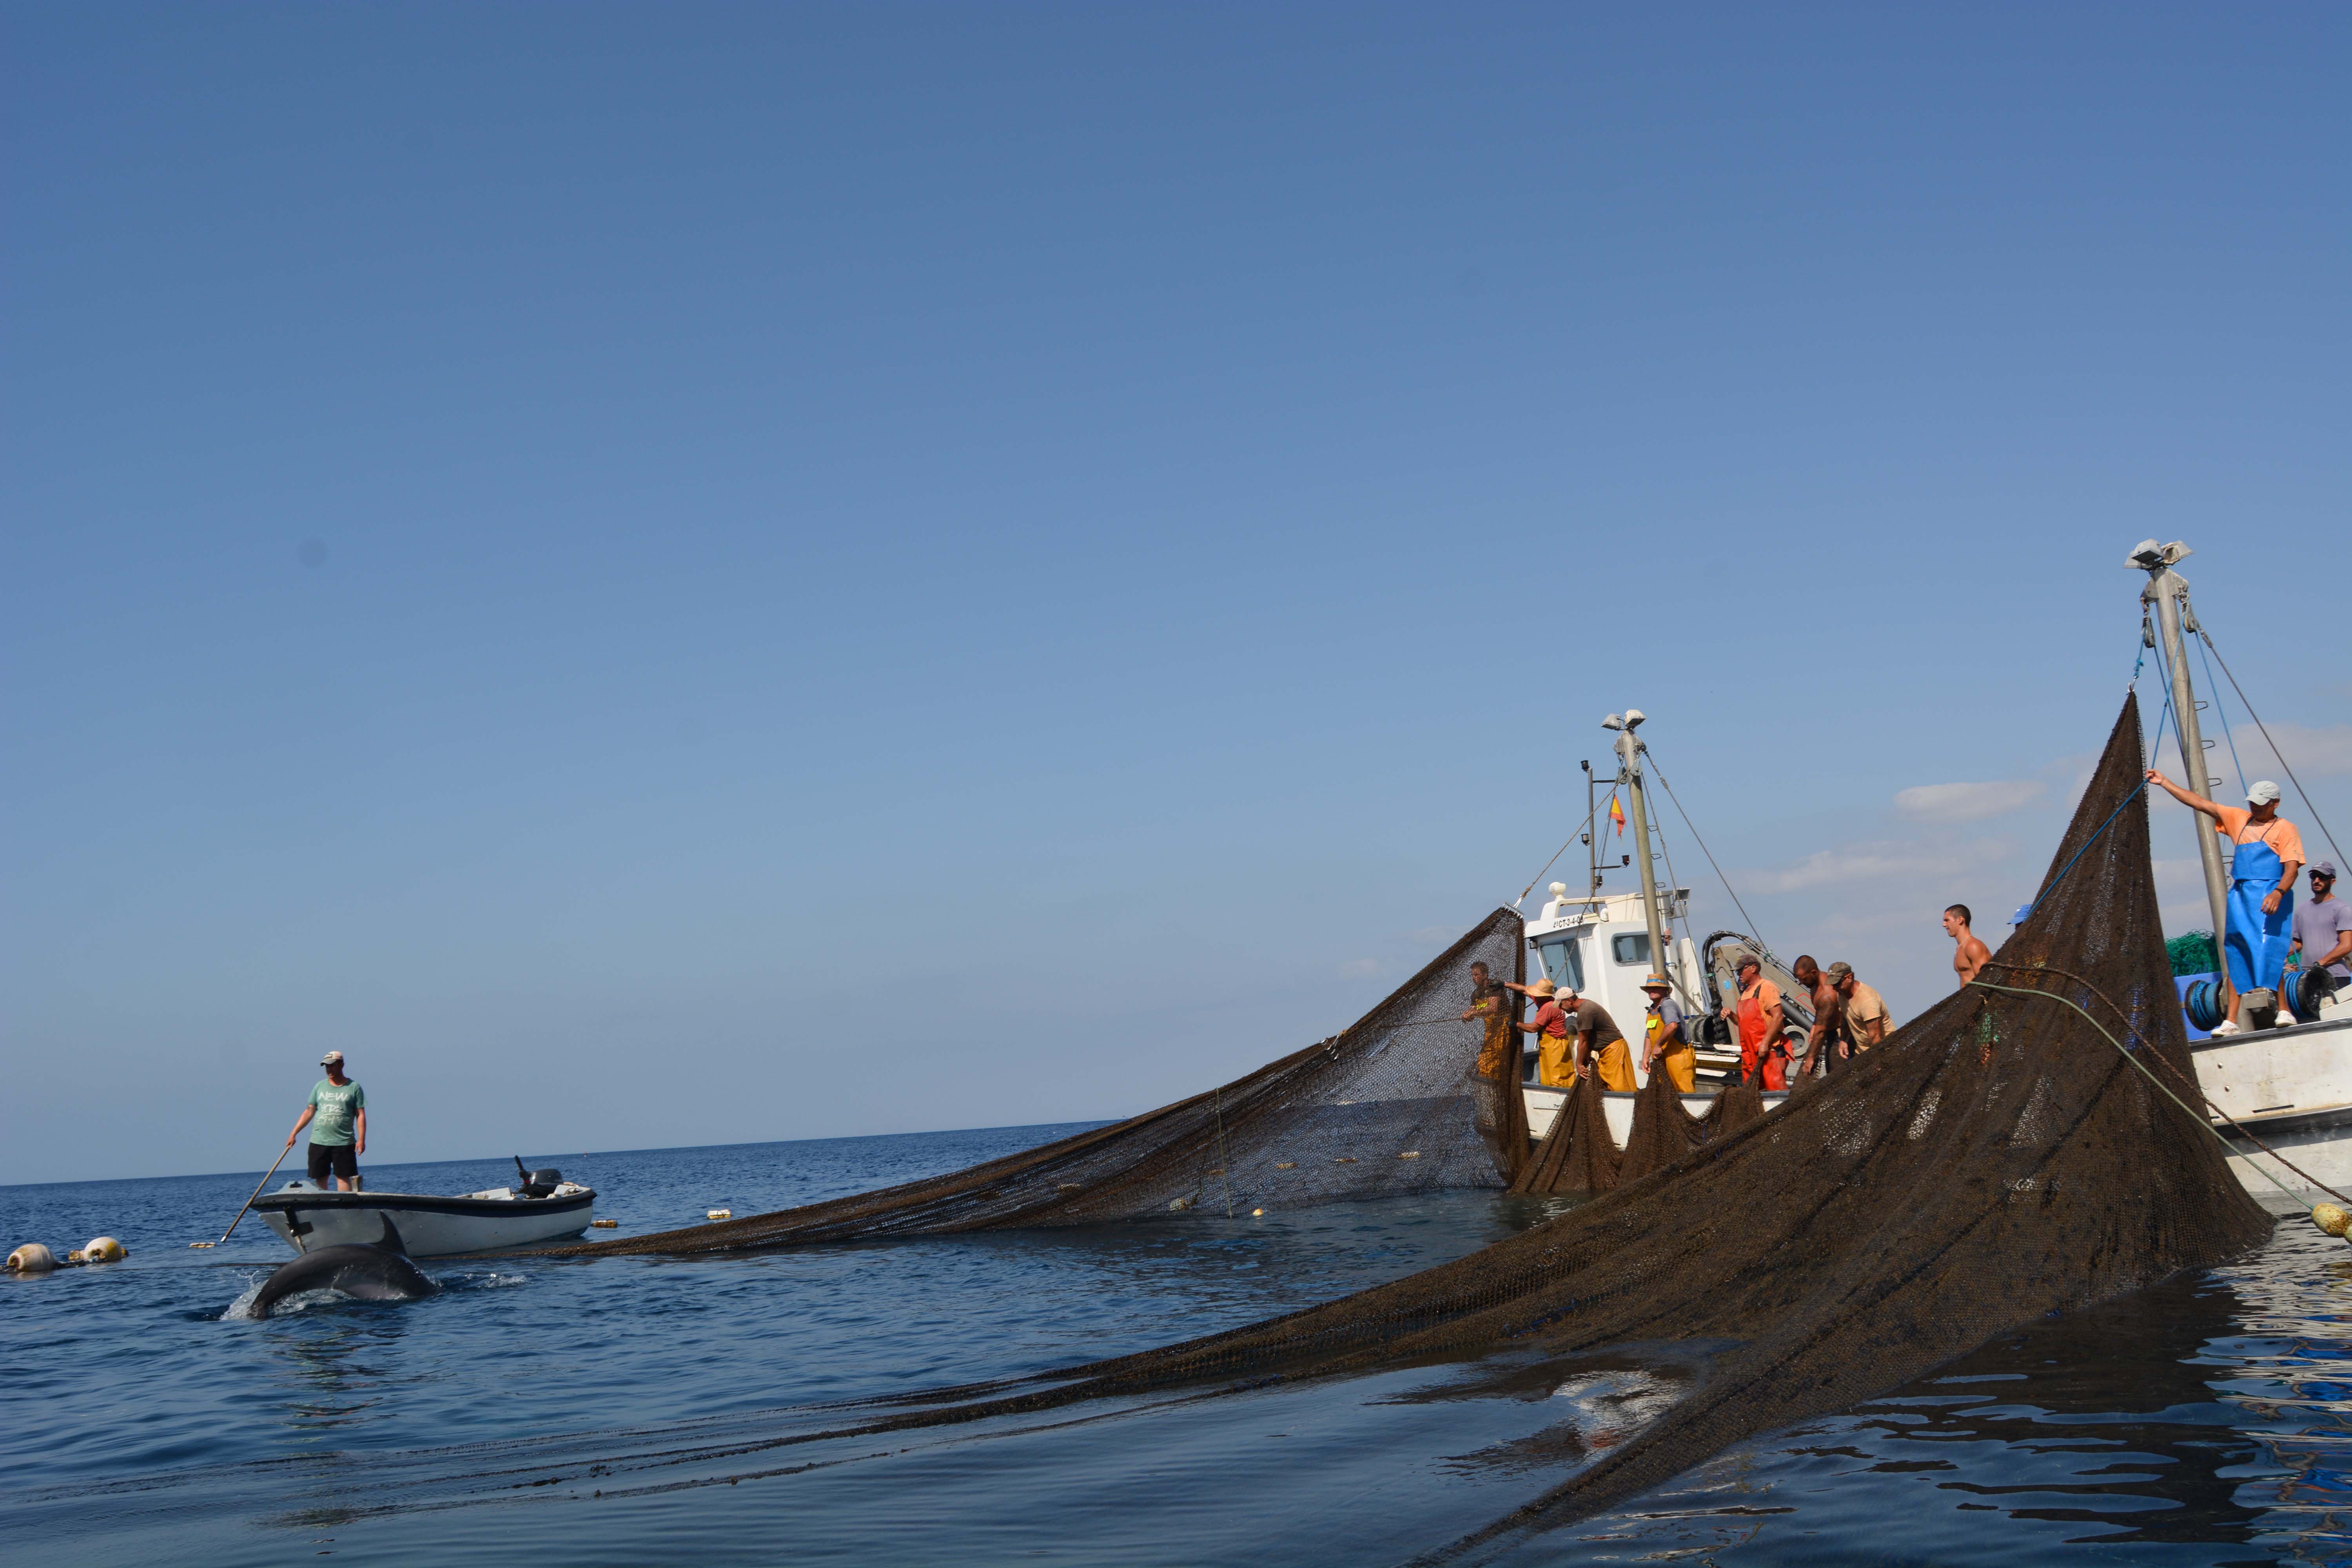 Los cetáceos fueron liberados por el personal de la empresa sin que sufrieran daños aparentes. Imagen: P. García / ANSE